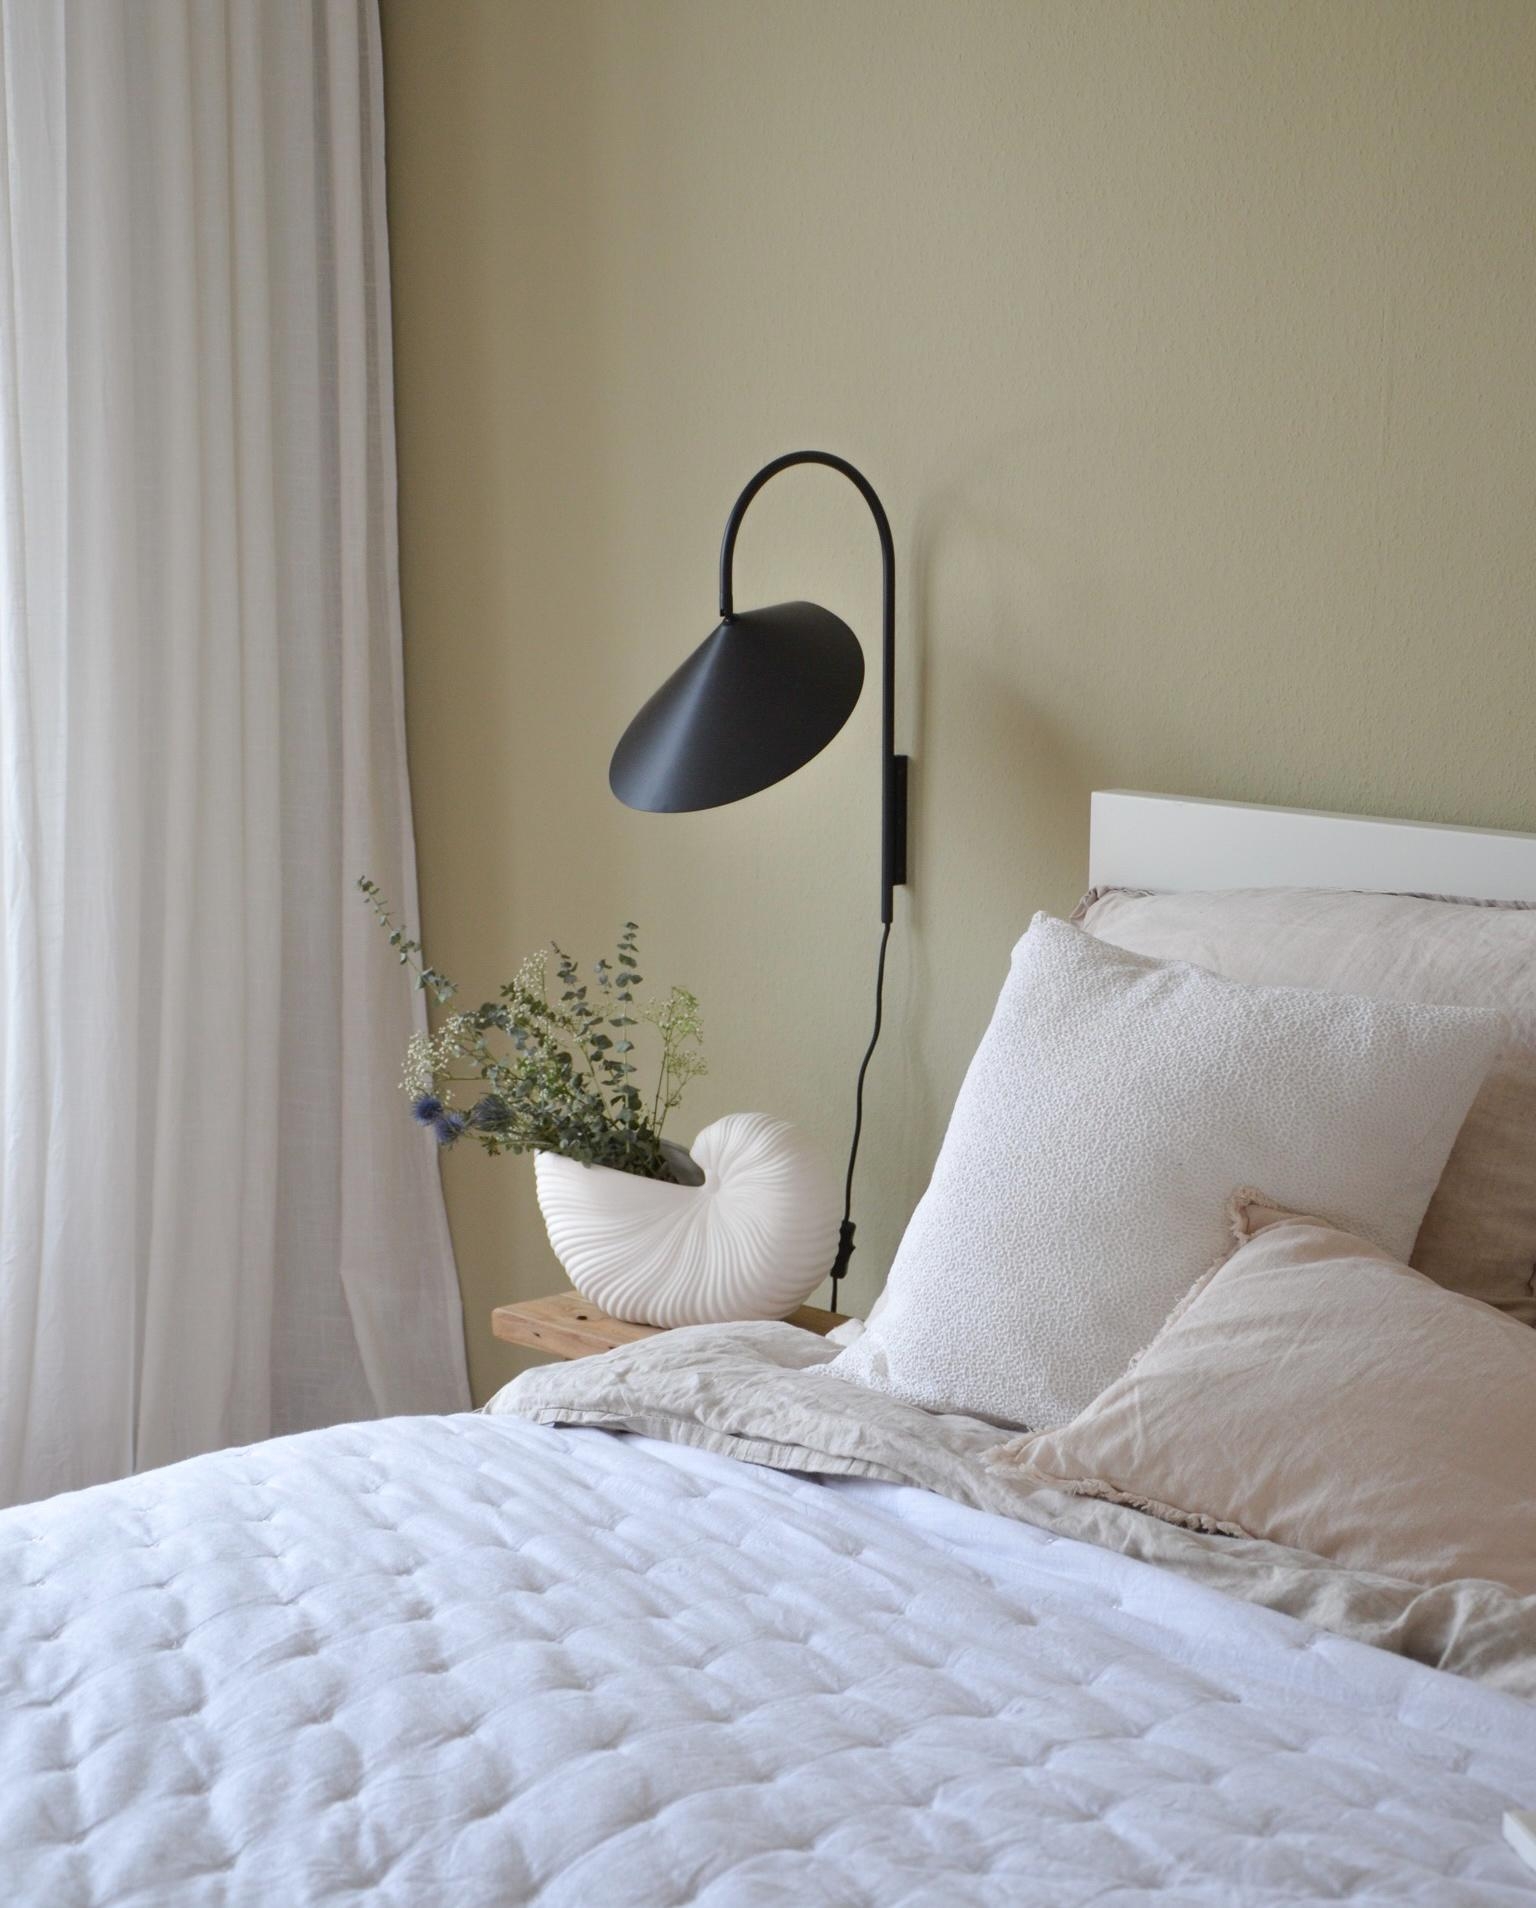 Was gibt es Schöneres als ein gemütliches Schlafzimmer ☁️
#schlafzimmerinspiration #cozy